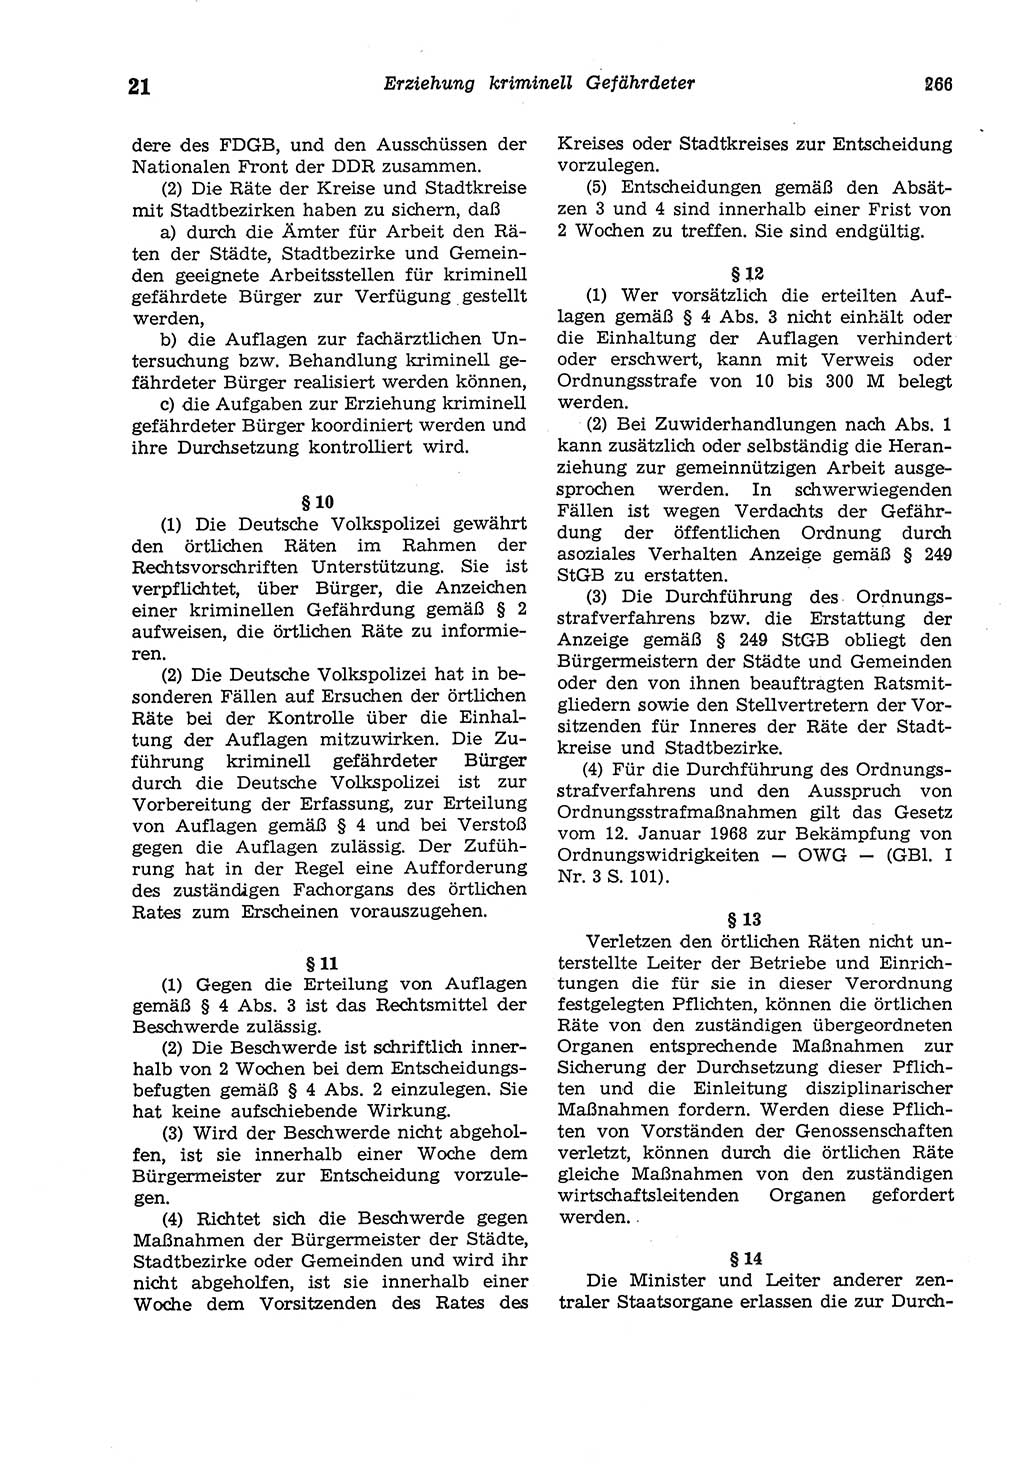 Strafgesetzbuch (StGB) der Deutschen Demokratischen Republik (DDR) und angrenzende Gesetze und Bestimmungen 1975, Seite 266 (StGB DDR Ges. Best. 1975, S. 266)